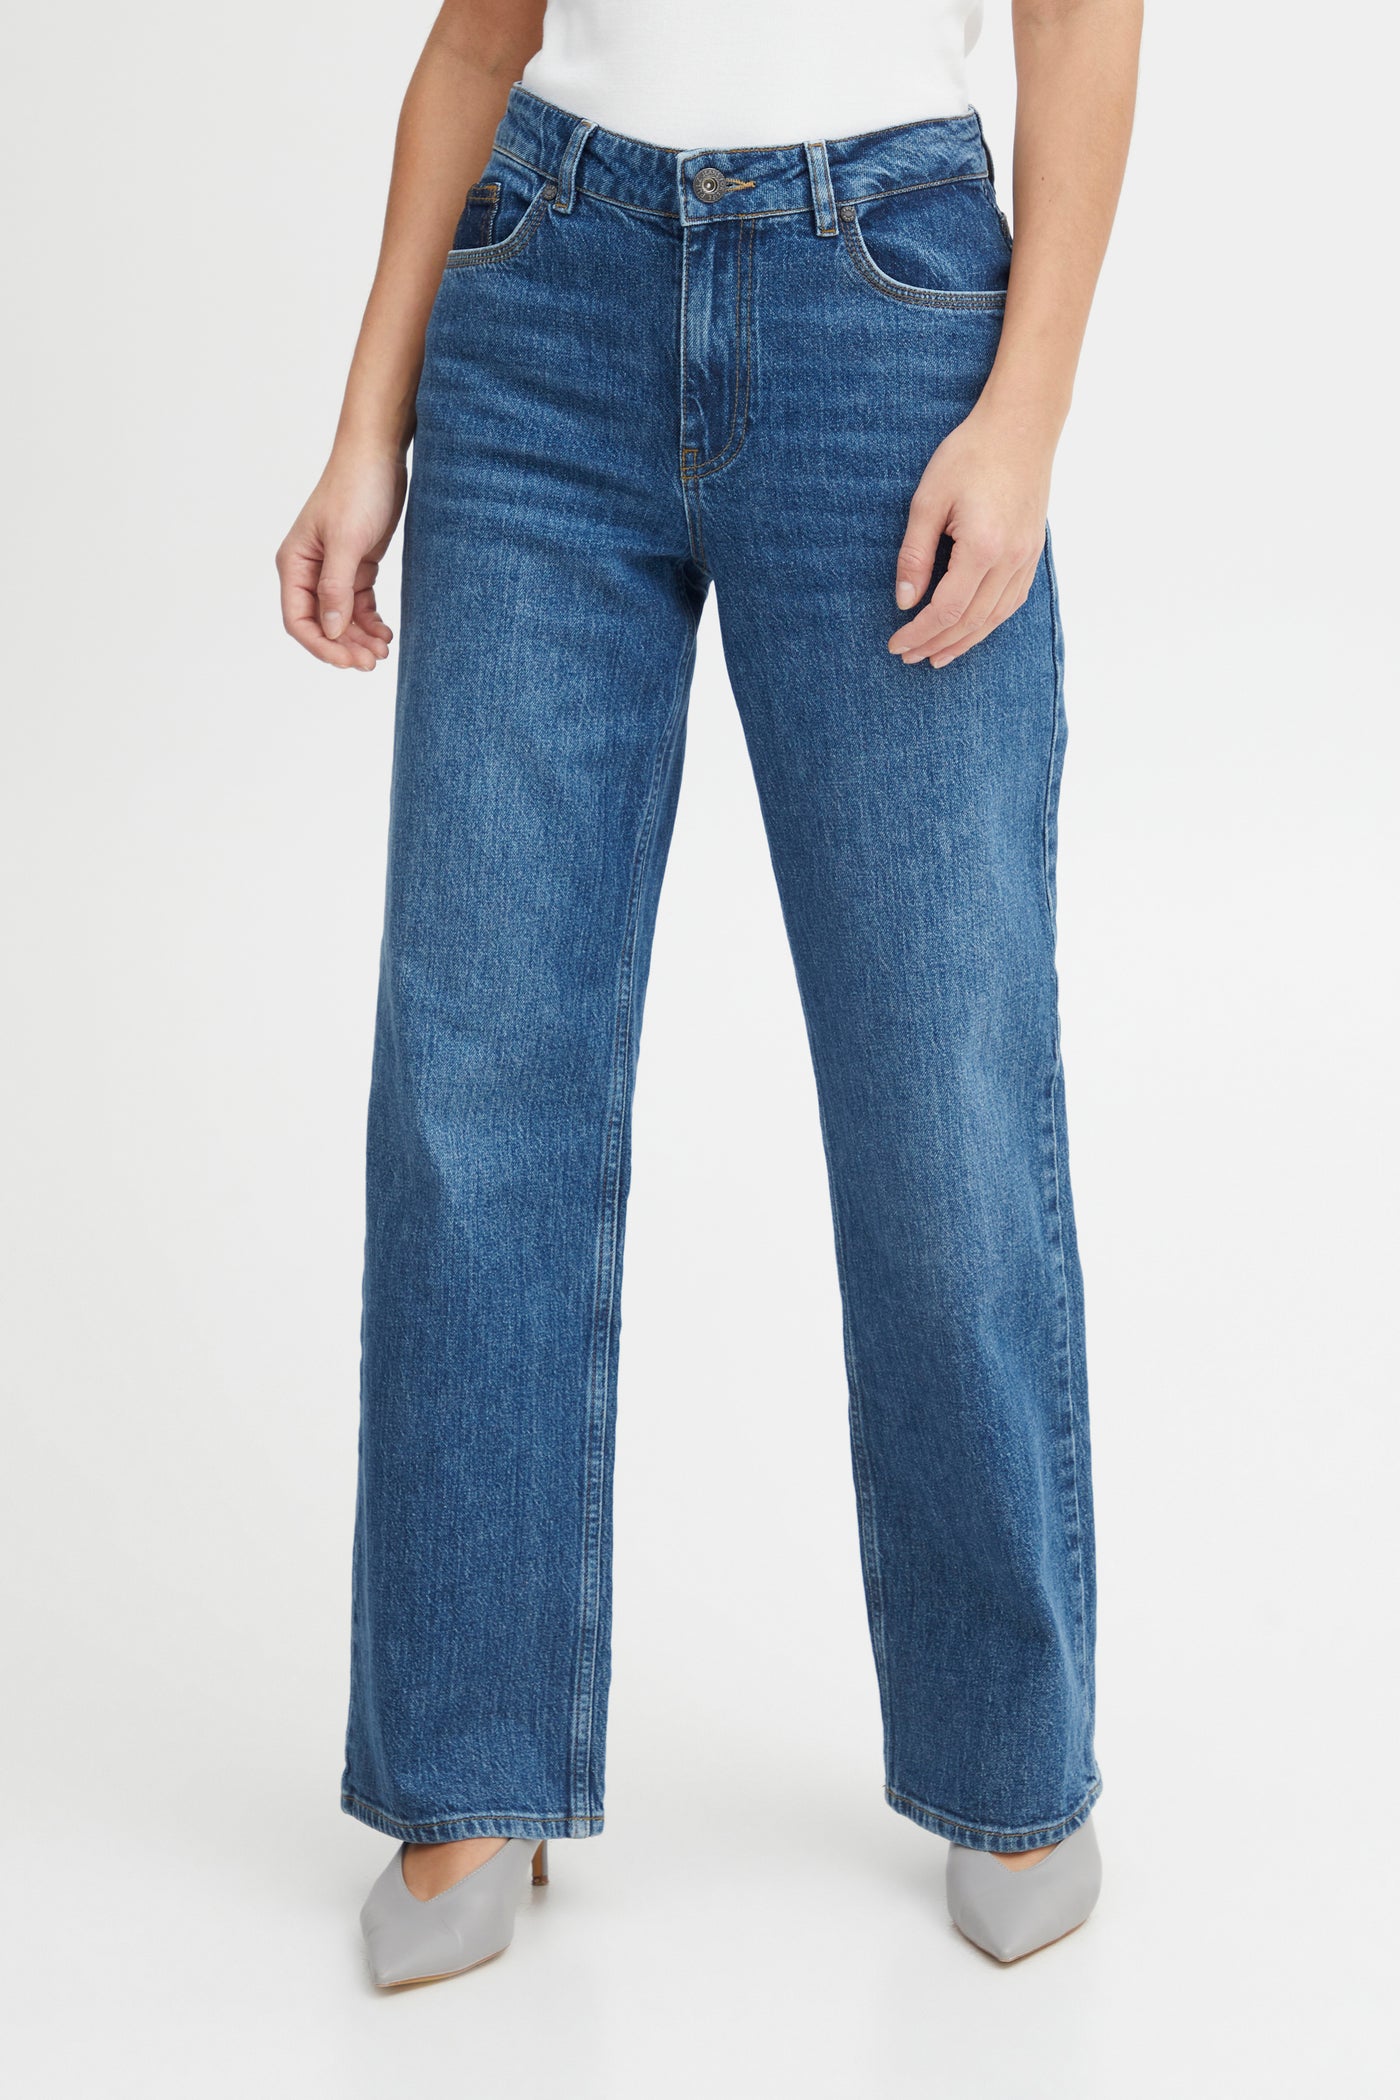 Vega jeans